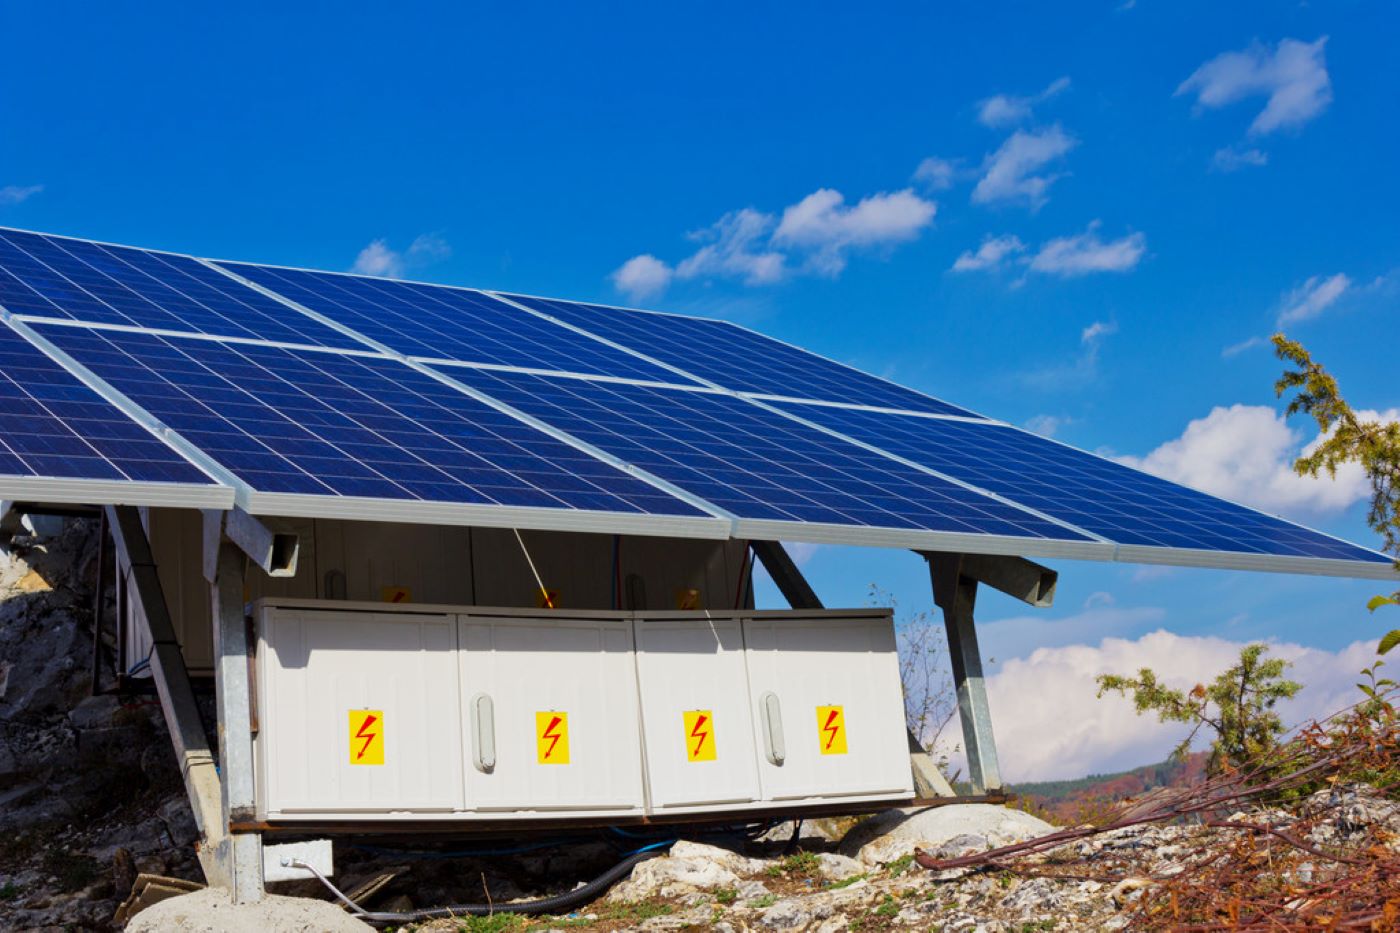 batterie solaire pour panneau solaire stockez l energie solaire pour une utilisation ulterieure.jpeg